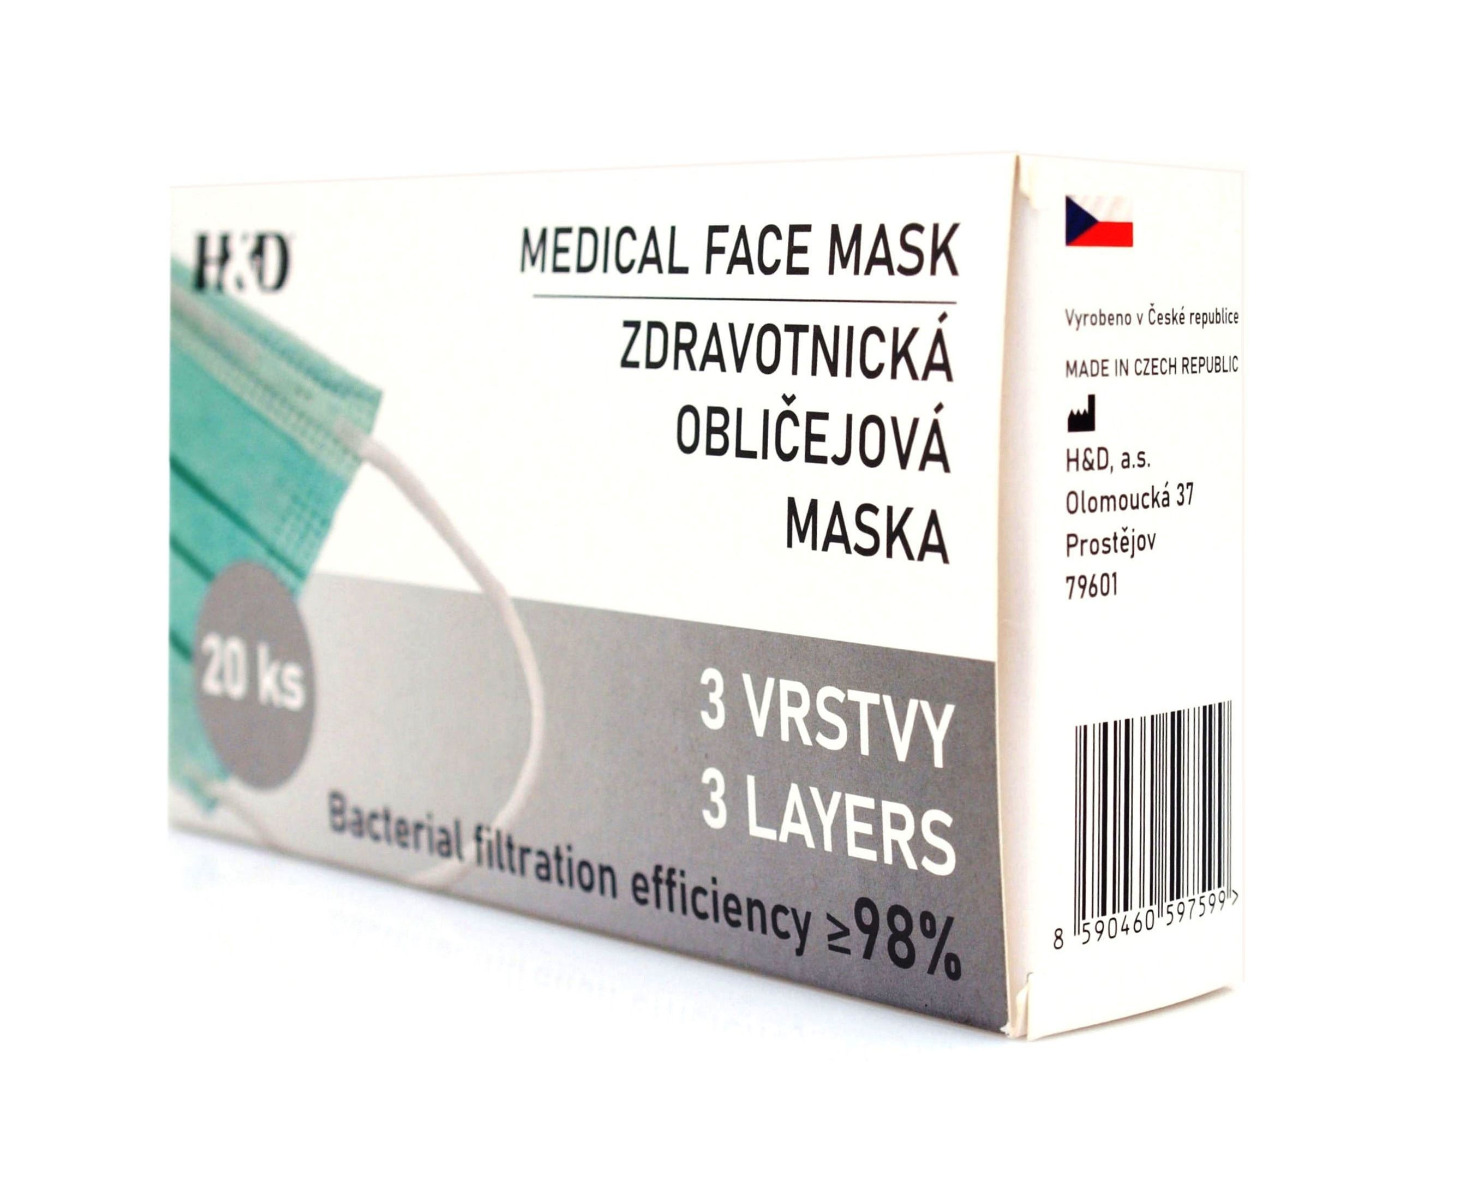 Zdravotnická obličejová maska BFE 98% rouška 20 ks